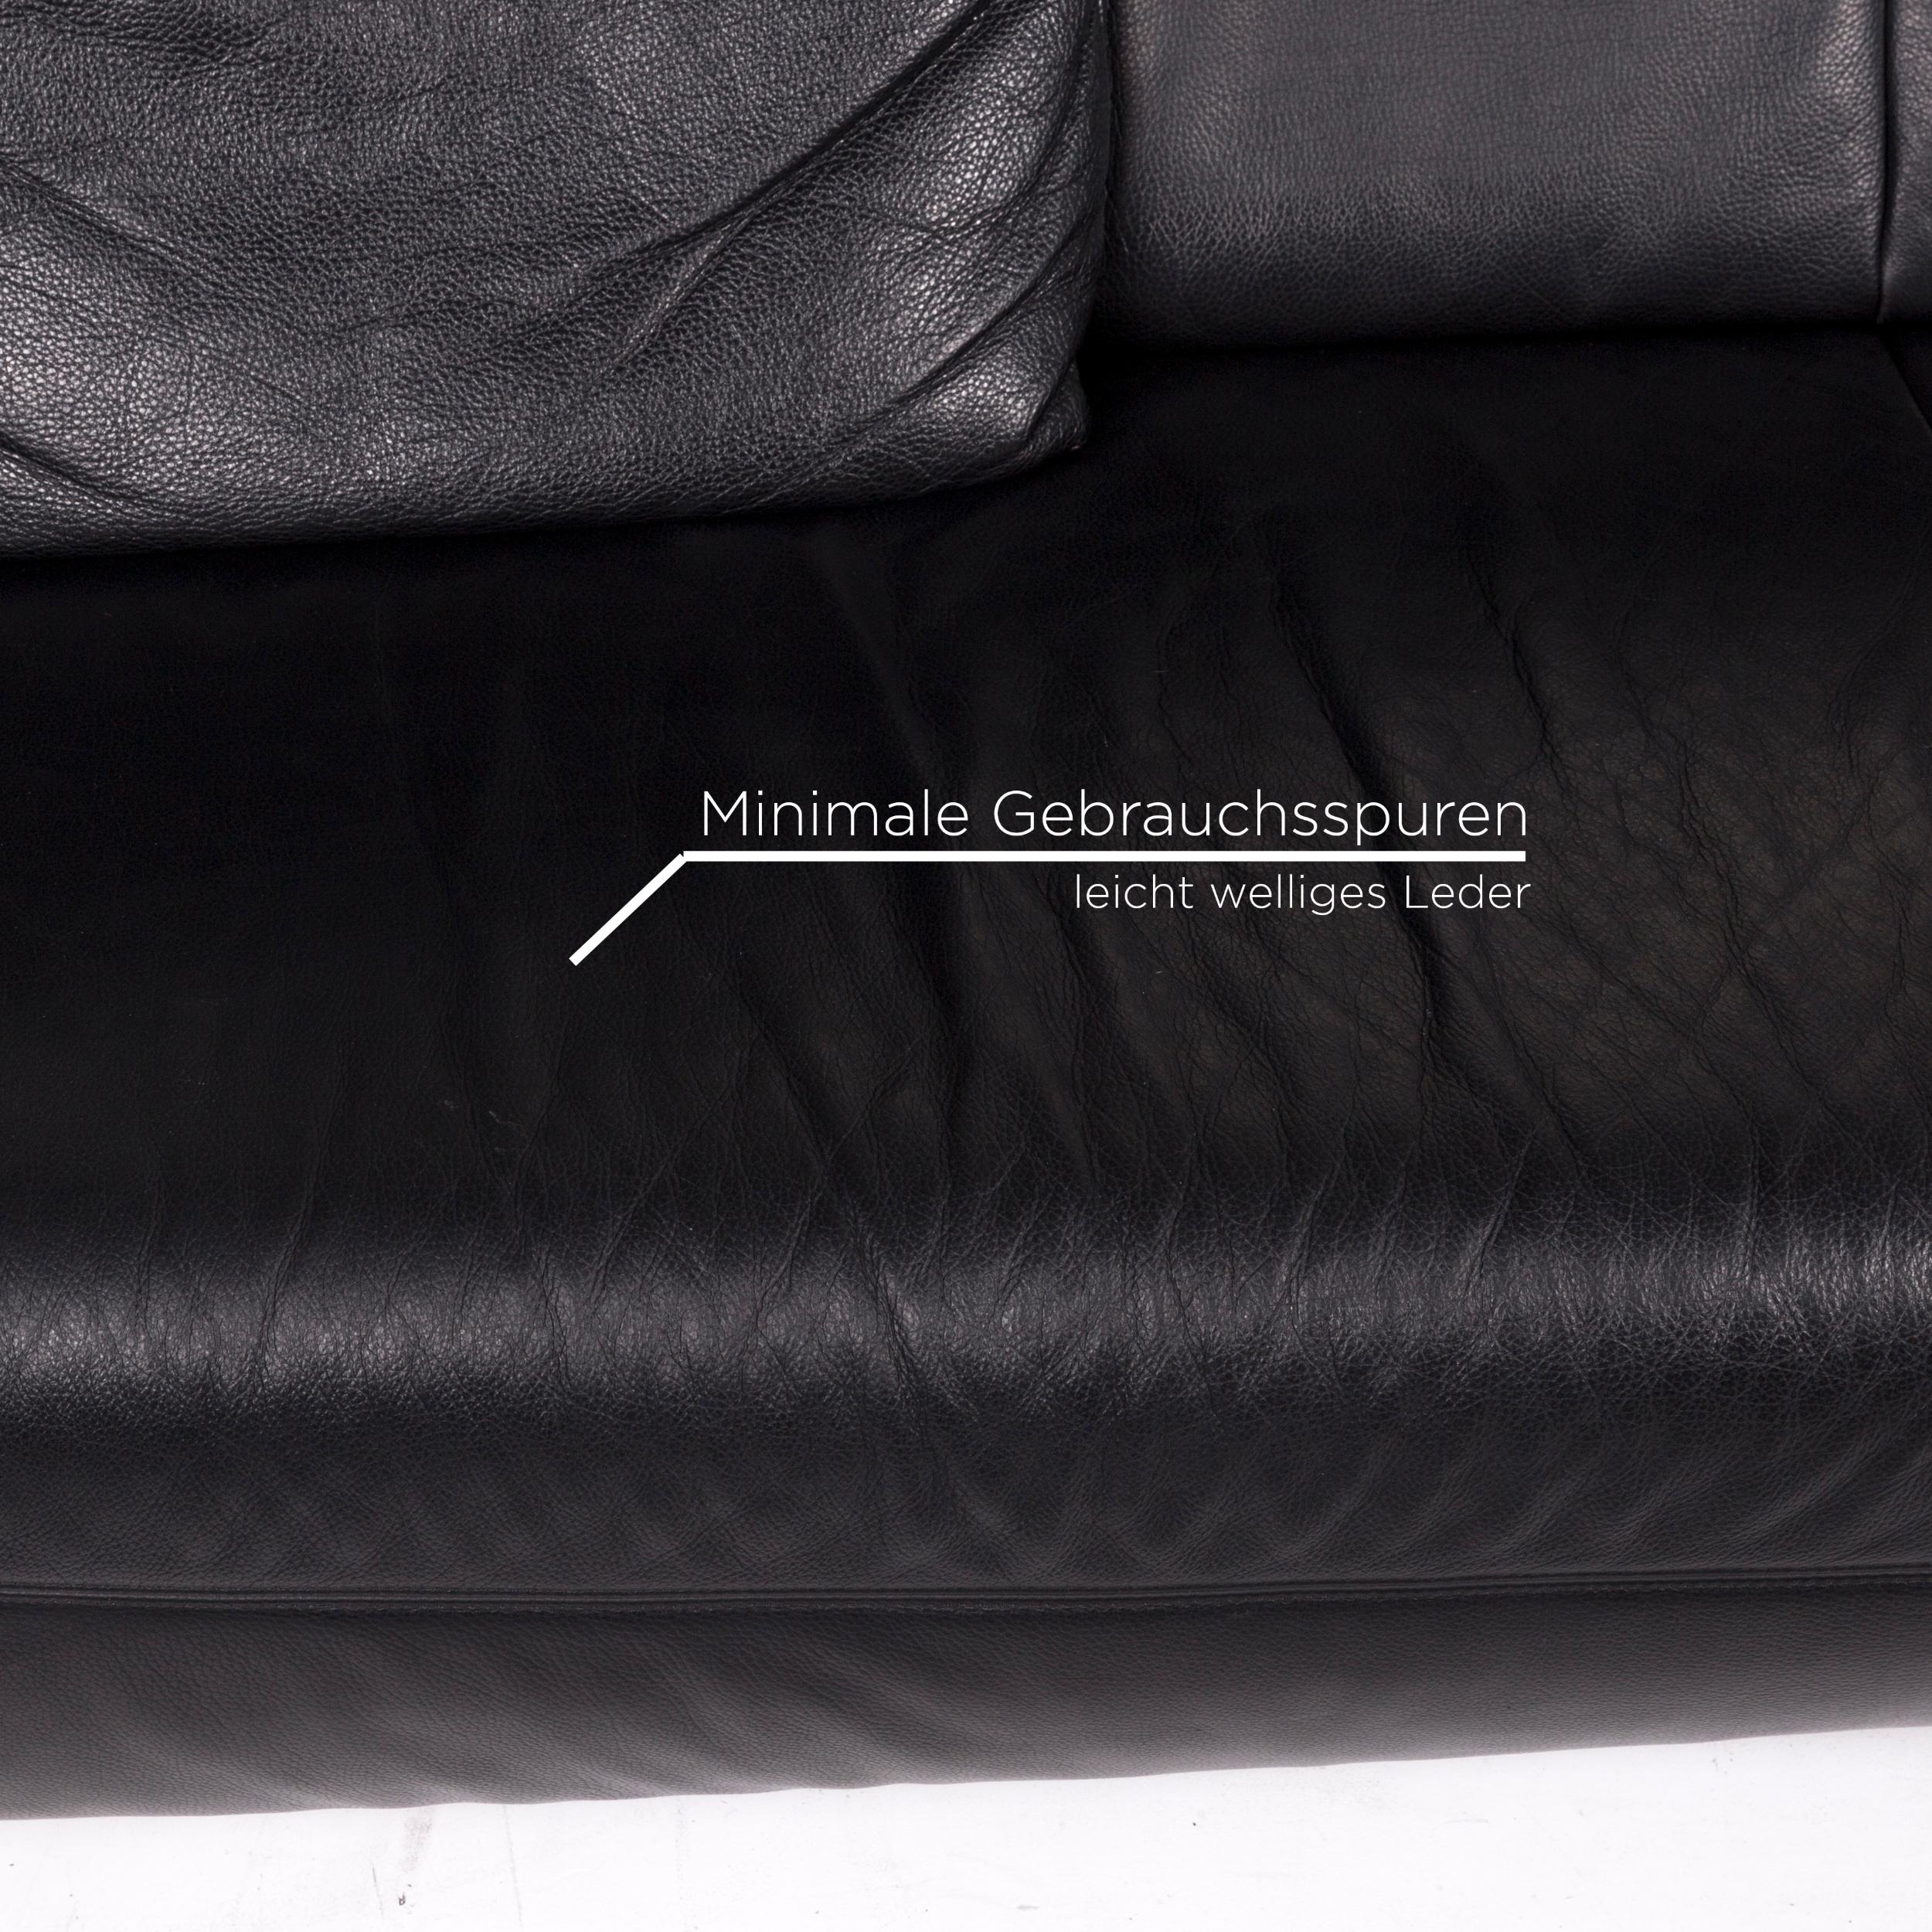 German Koinor Pearl Leather Sofa Set Black 1 Three-Seat 1 Stool